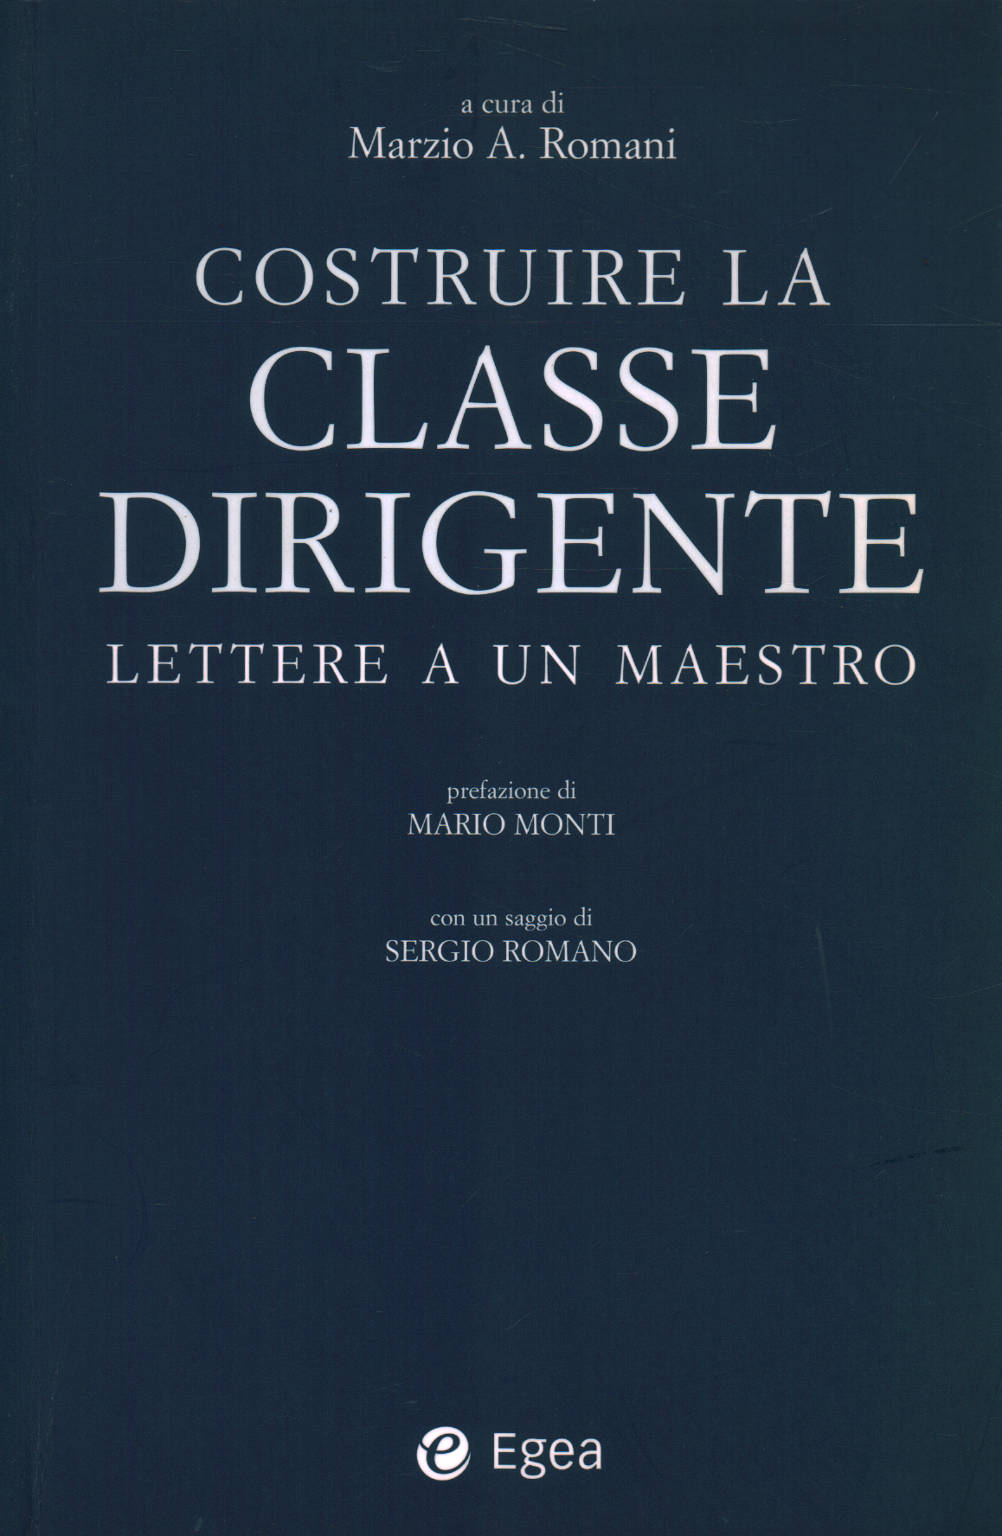 Costruire la classe dirigente: lettere a un maestr, Marzio A. Romani